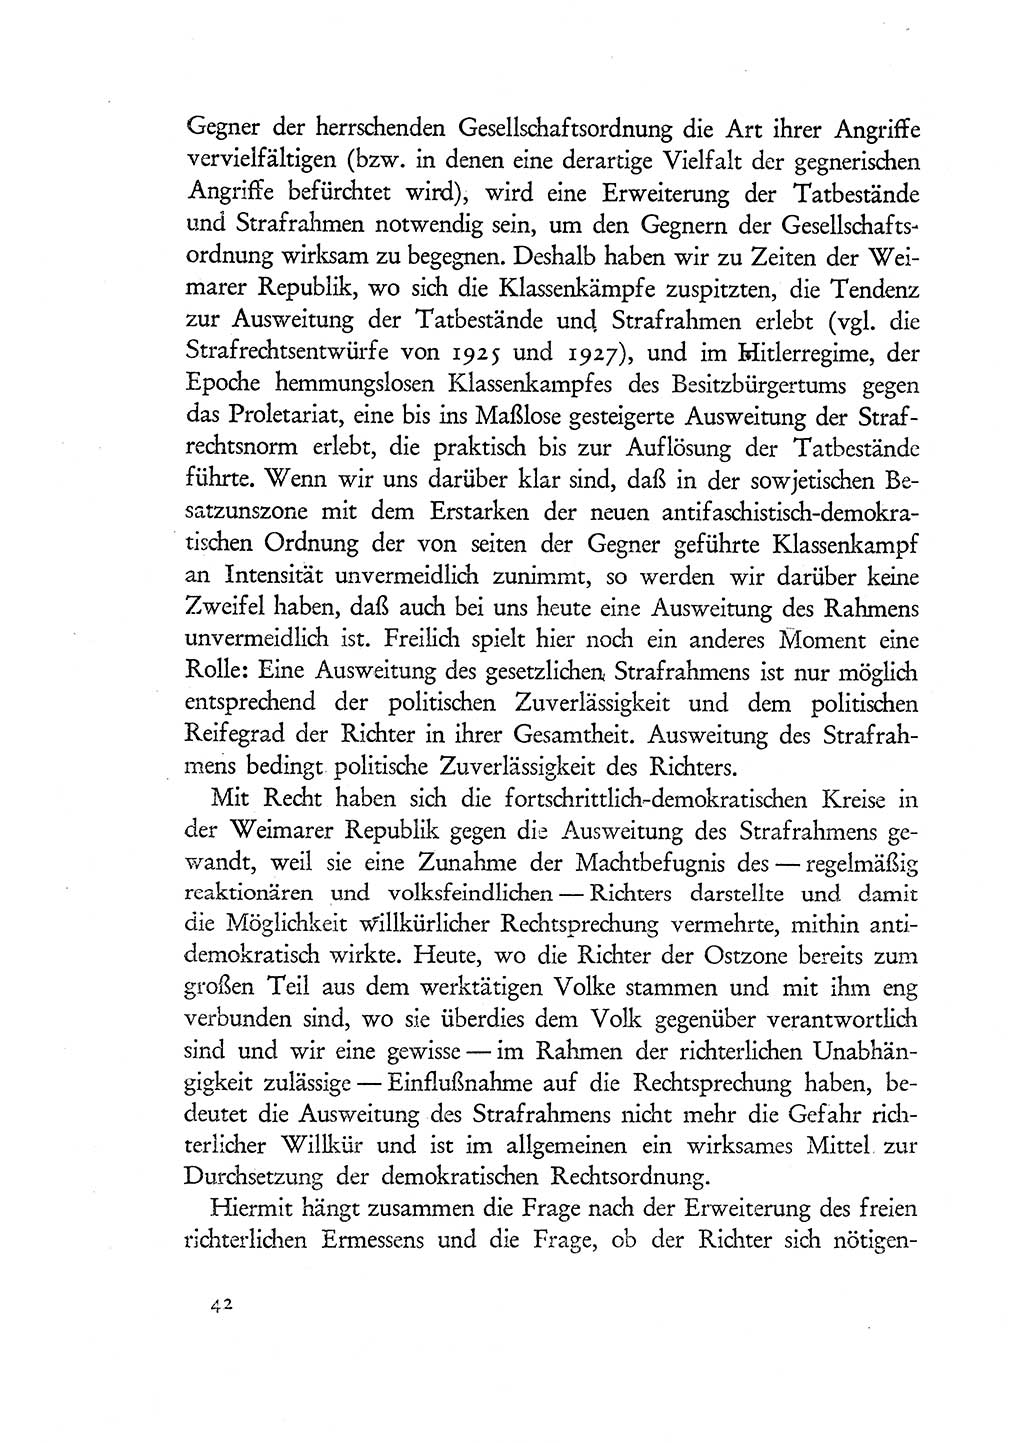 Probleme eines demokratischen Strafrechts [Sowjetische Besatzungszone (SBZ) Deutschlands] 1949, Seite 42 (Probl. Strafr. SBZ Dtl. 1949, S. 42)